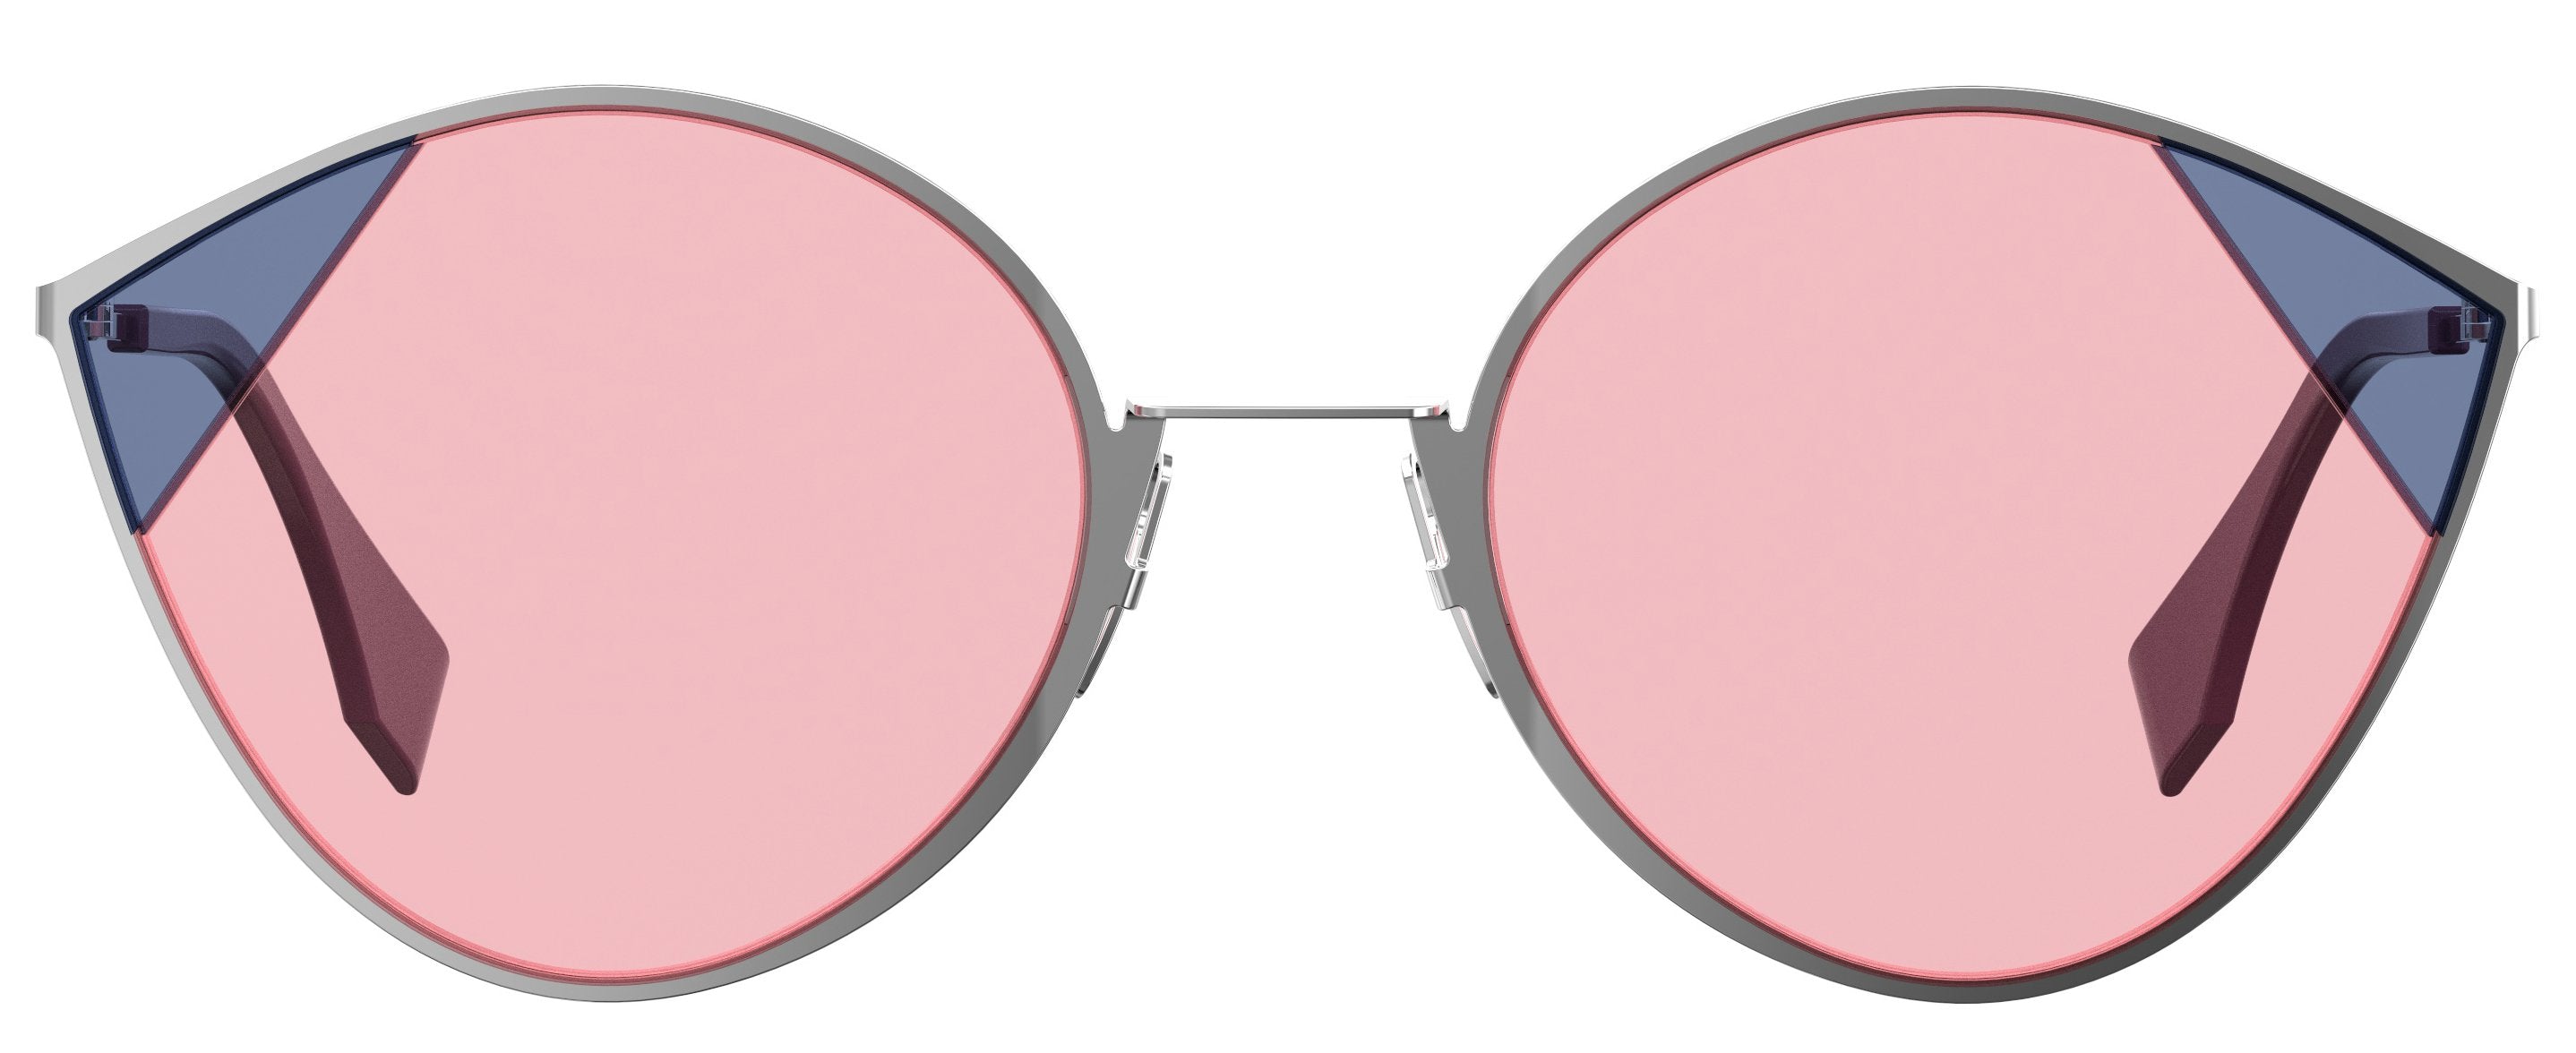 FENDI Fendi 342 Cat-Eye Sunglasses